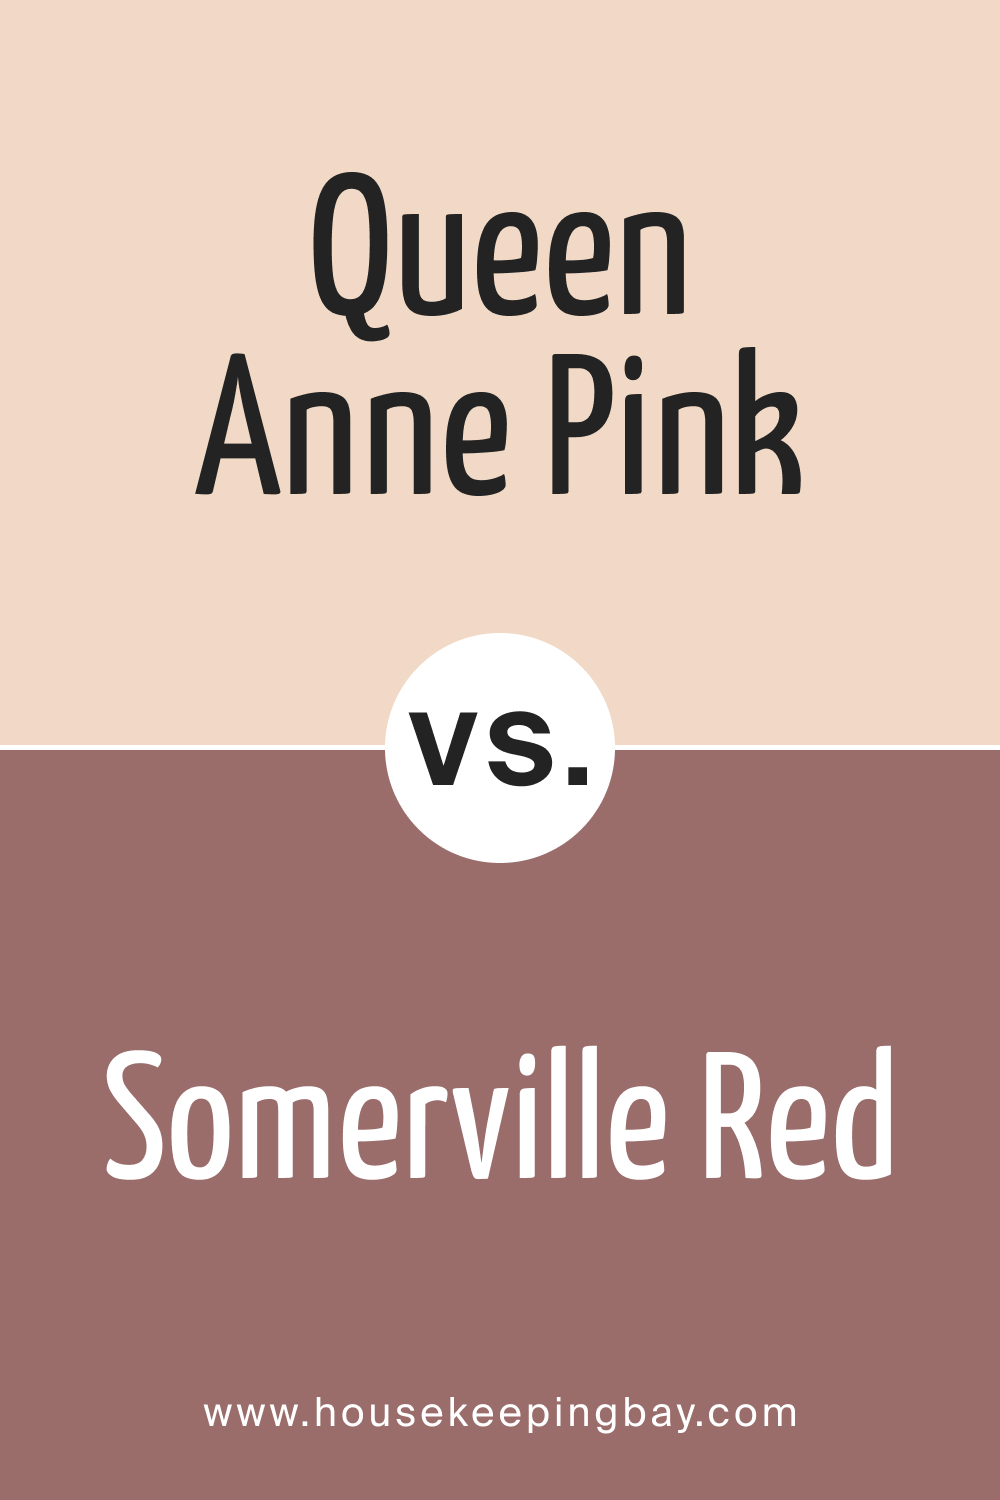 Queen Anne Pink HC-60 vs. HC-62 Somerville Red